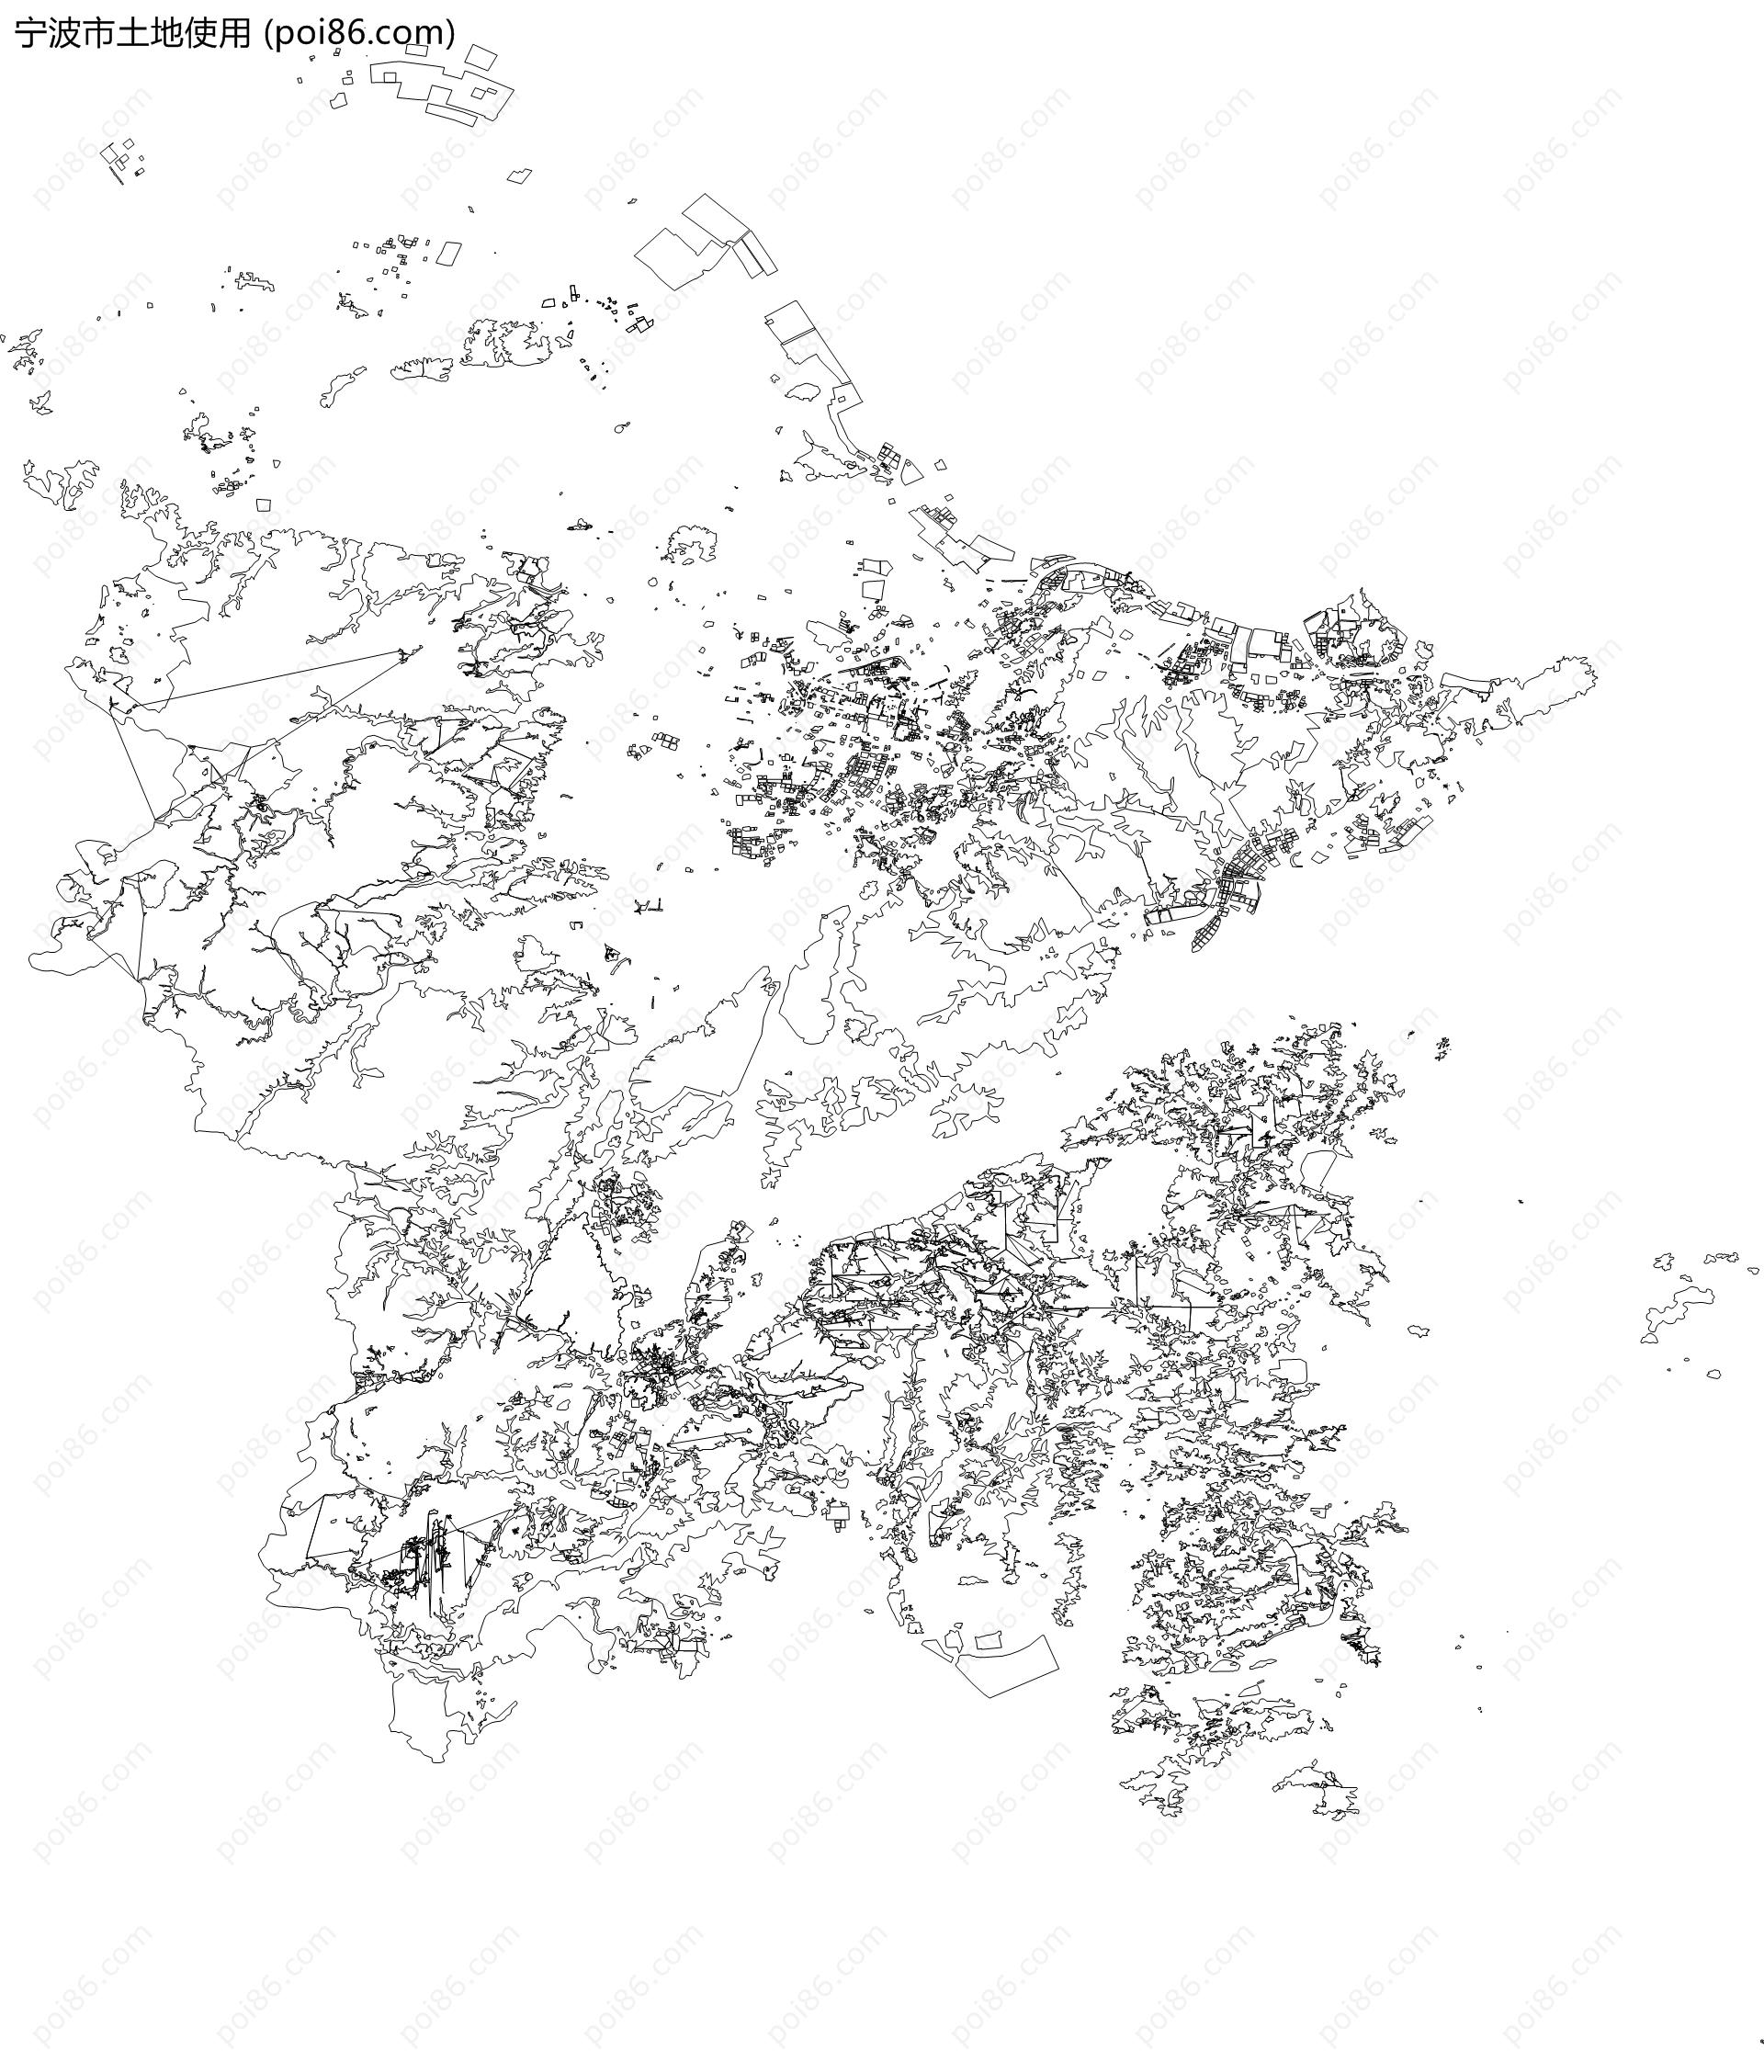 宁波市土地使用地图